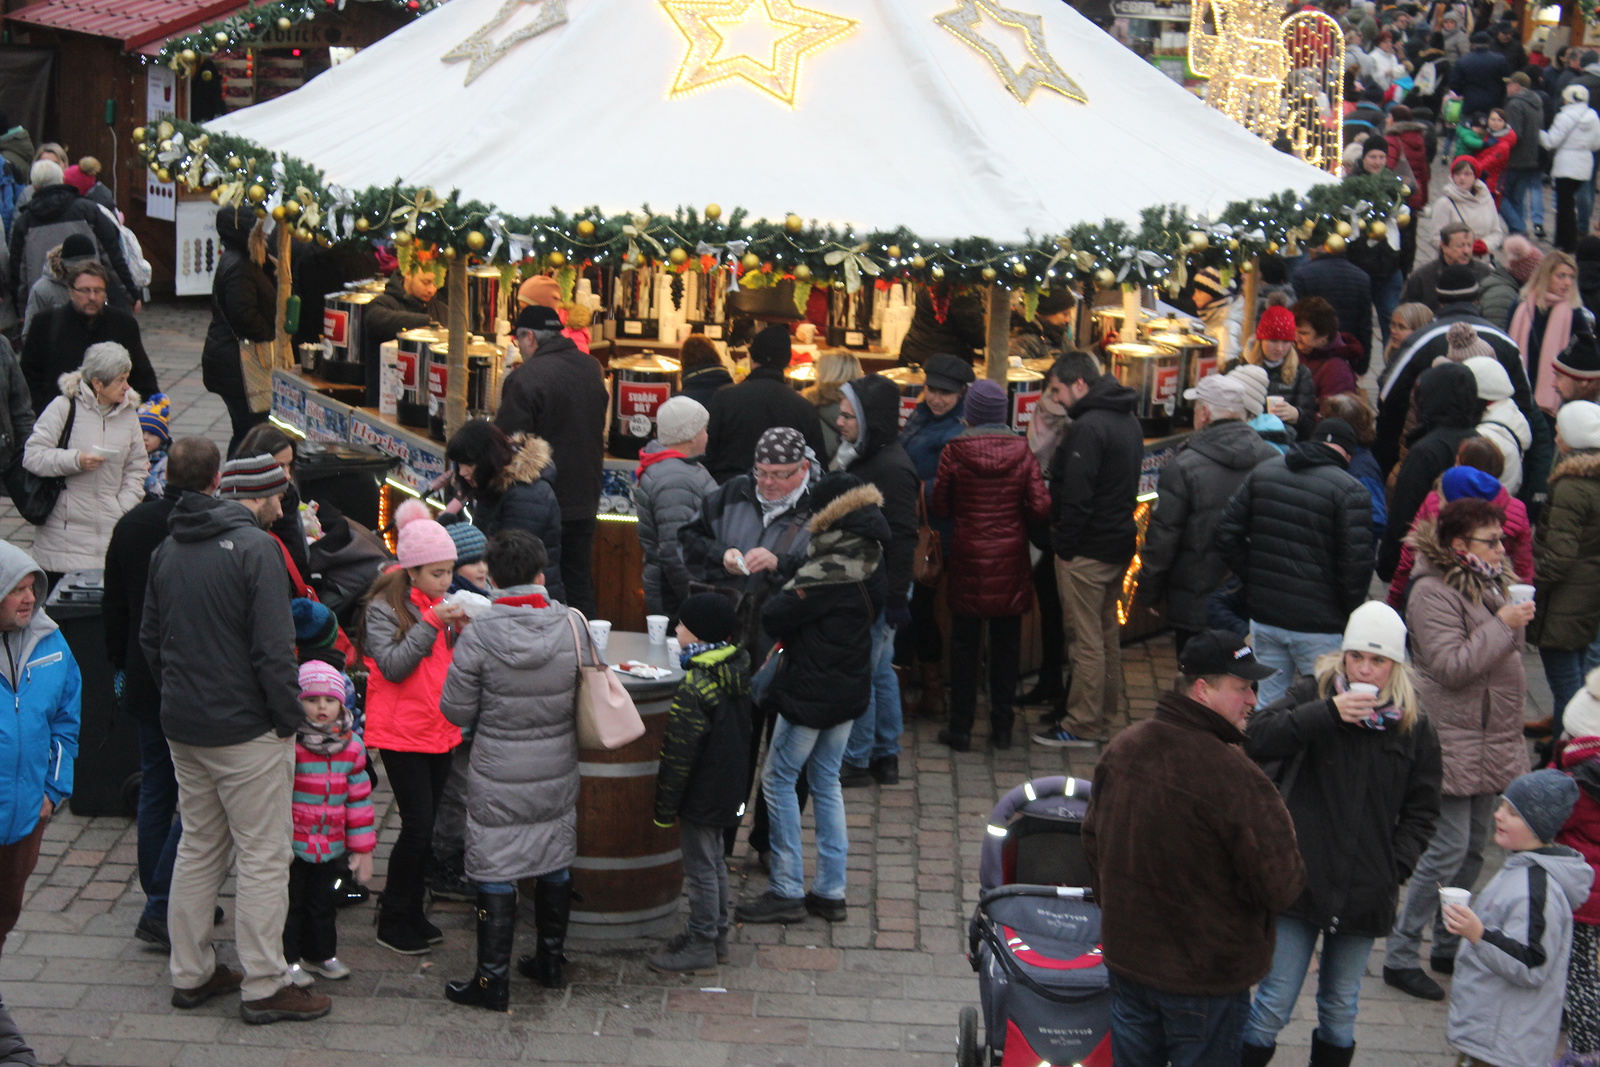 FOTOGALERIE: Vánoční trhy jsou v Plzni místem setkávání - Plzeňský deník